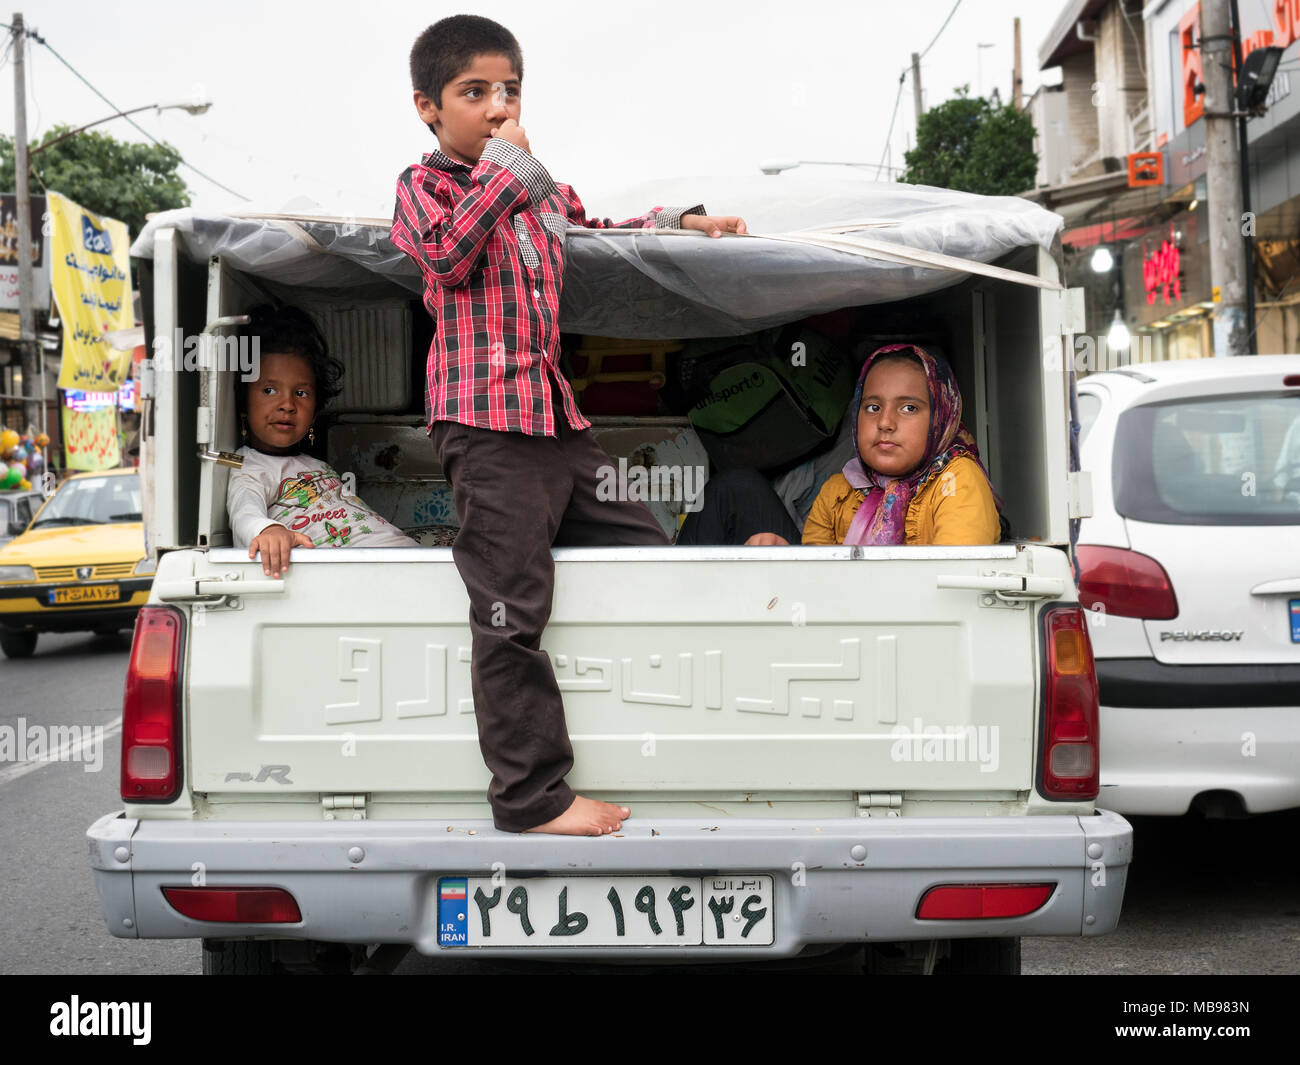 Equitazione per bambini sul retro di un pick-up truck nel traffico cittadino. Babolsar, provincia Mazandaran, Iran Foto Stock